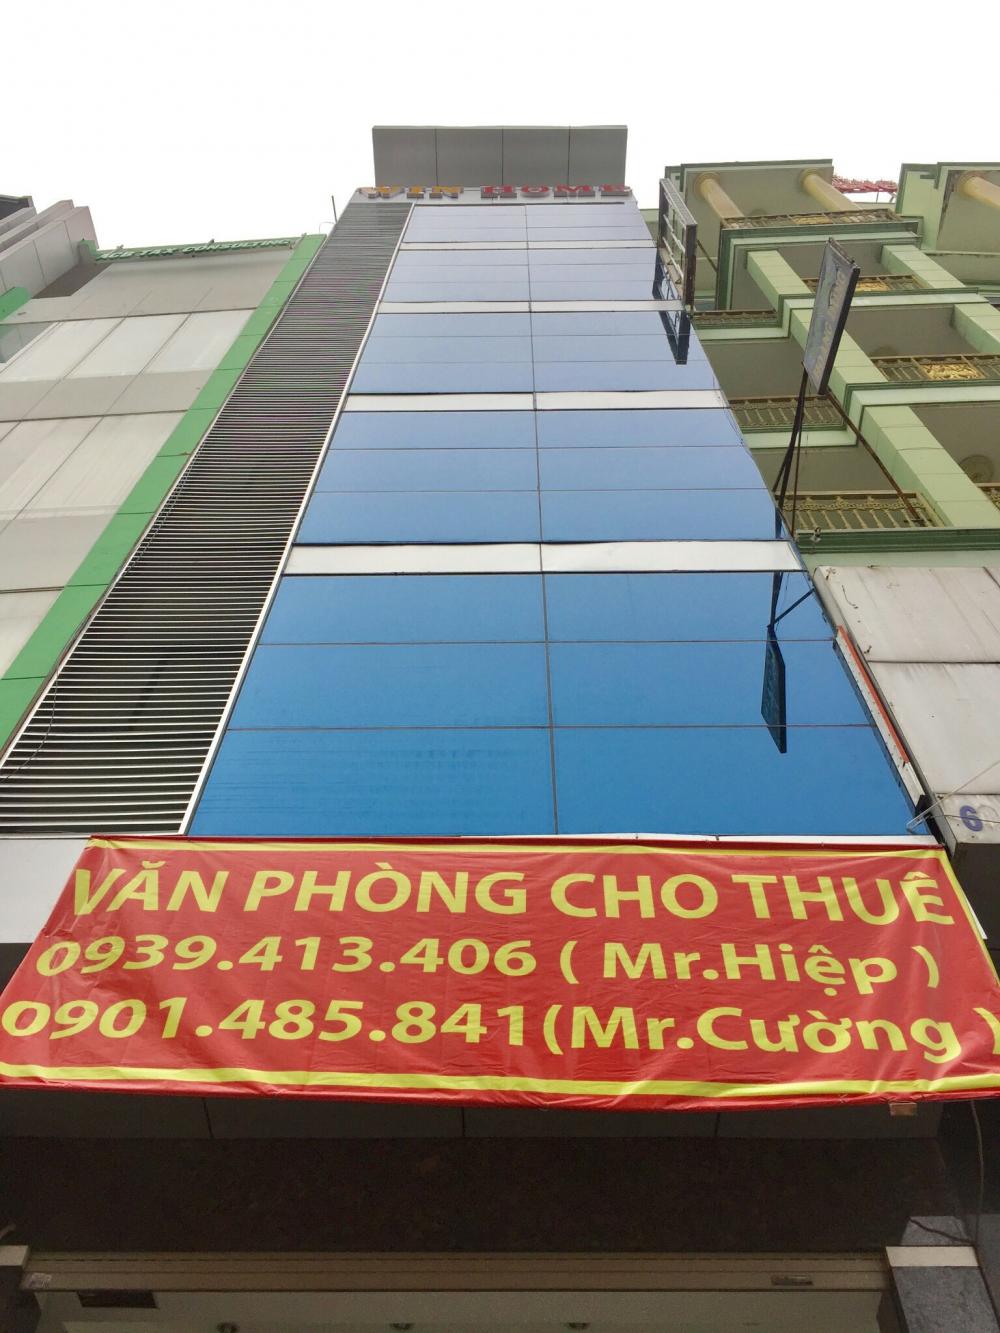 Diện tích văn phòng cho thuê – Quận Tân Bình – 32m2 chỉ 10 triệu – mặt tiền – giá rẻ